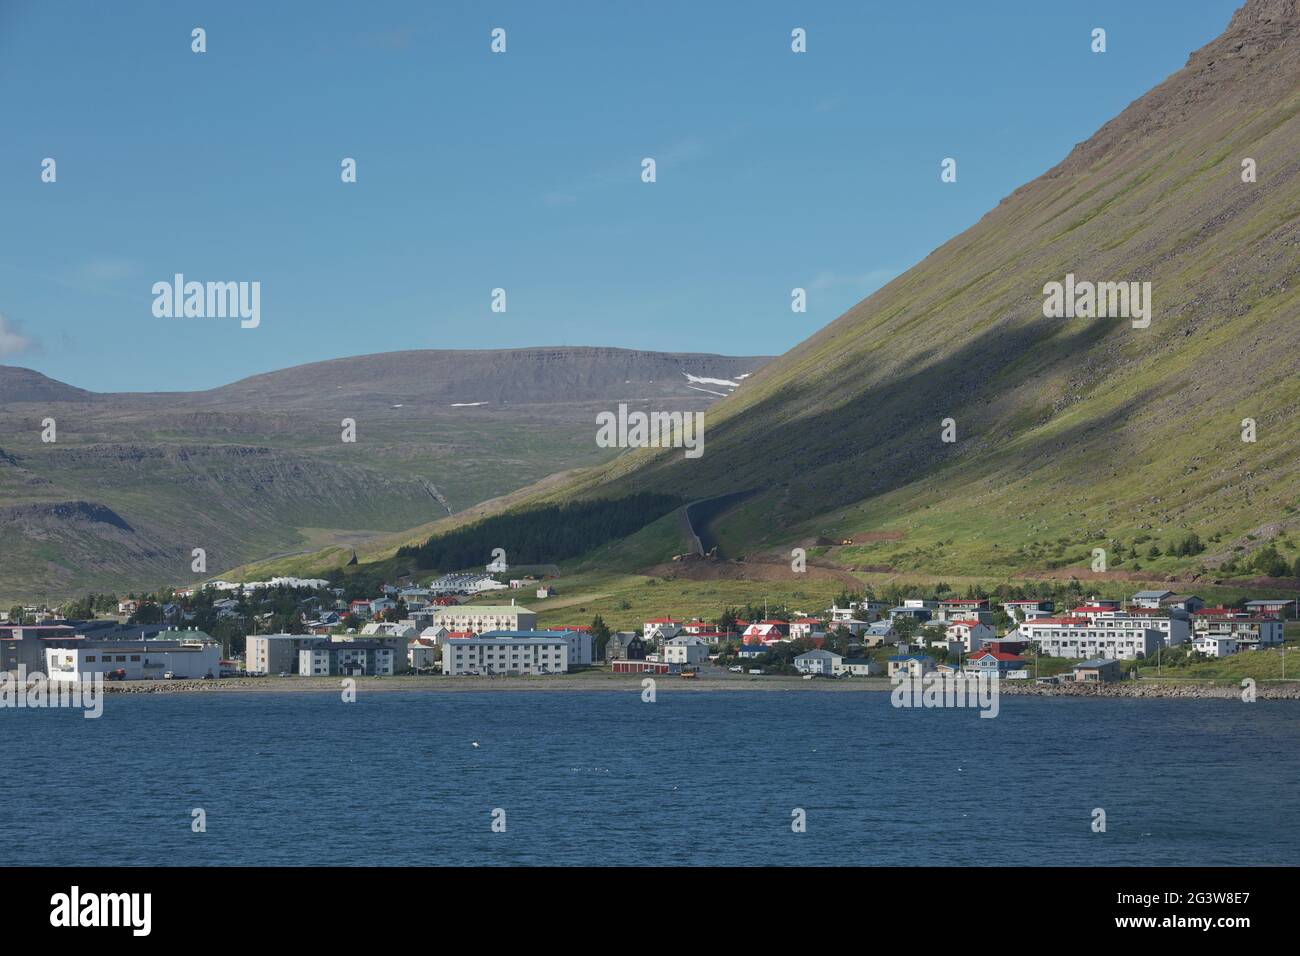 Splendida vista e paesaggio del fiordo islandese che circonda il villaggio di Isafjordur in Islanda Foto Stock